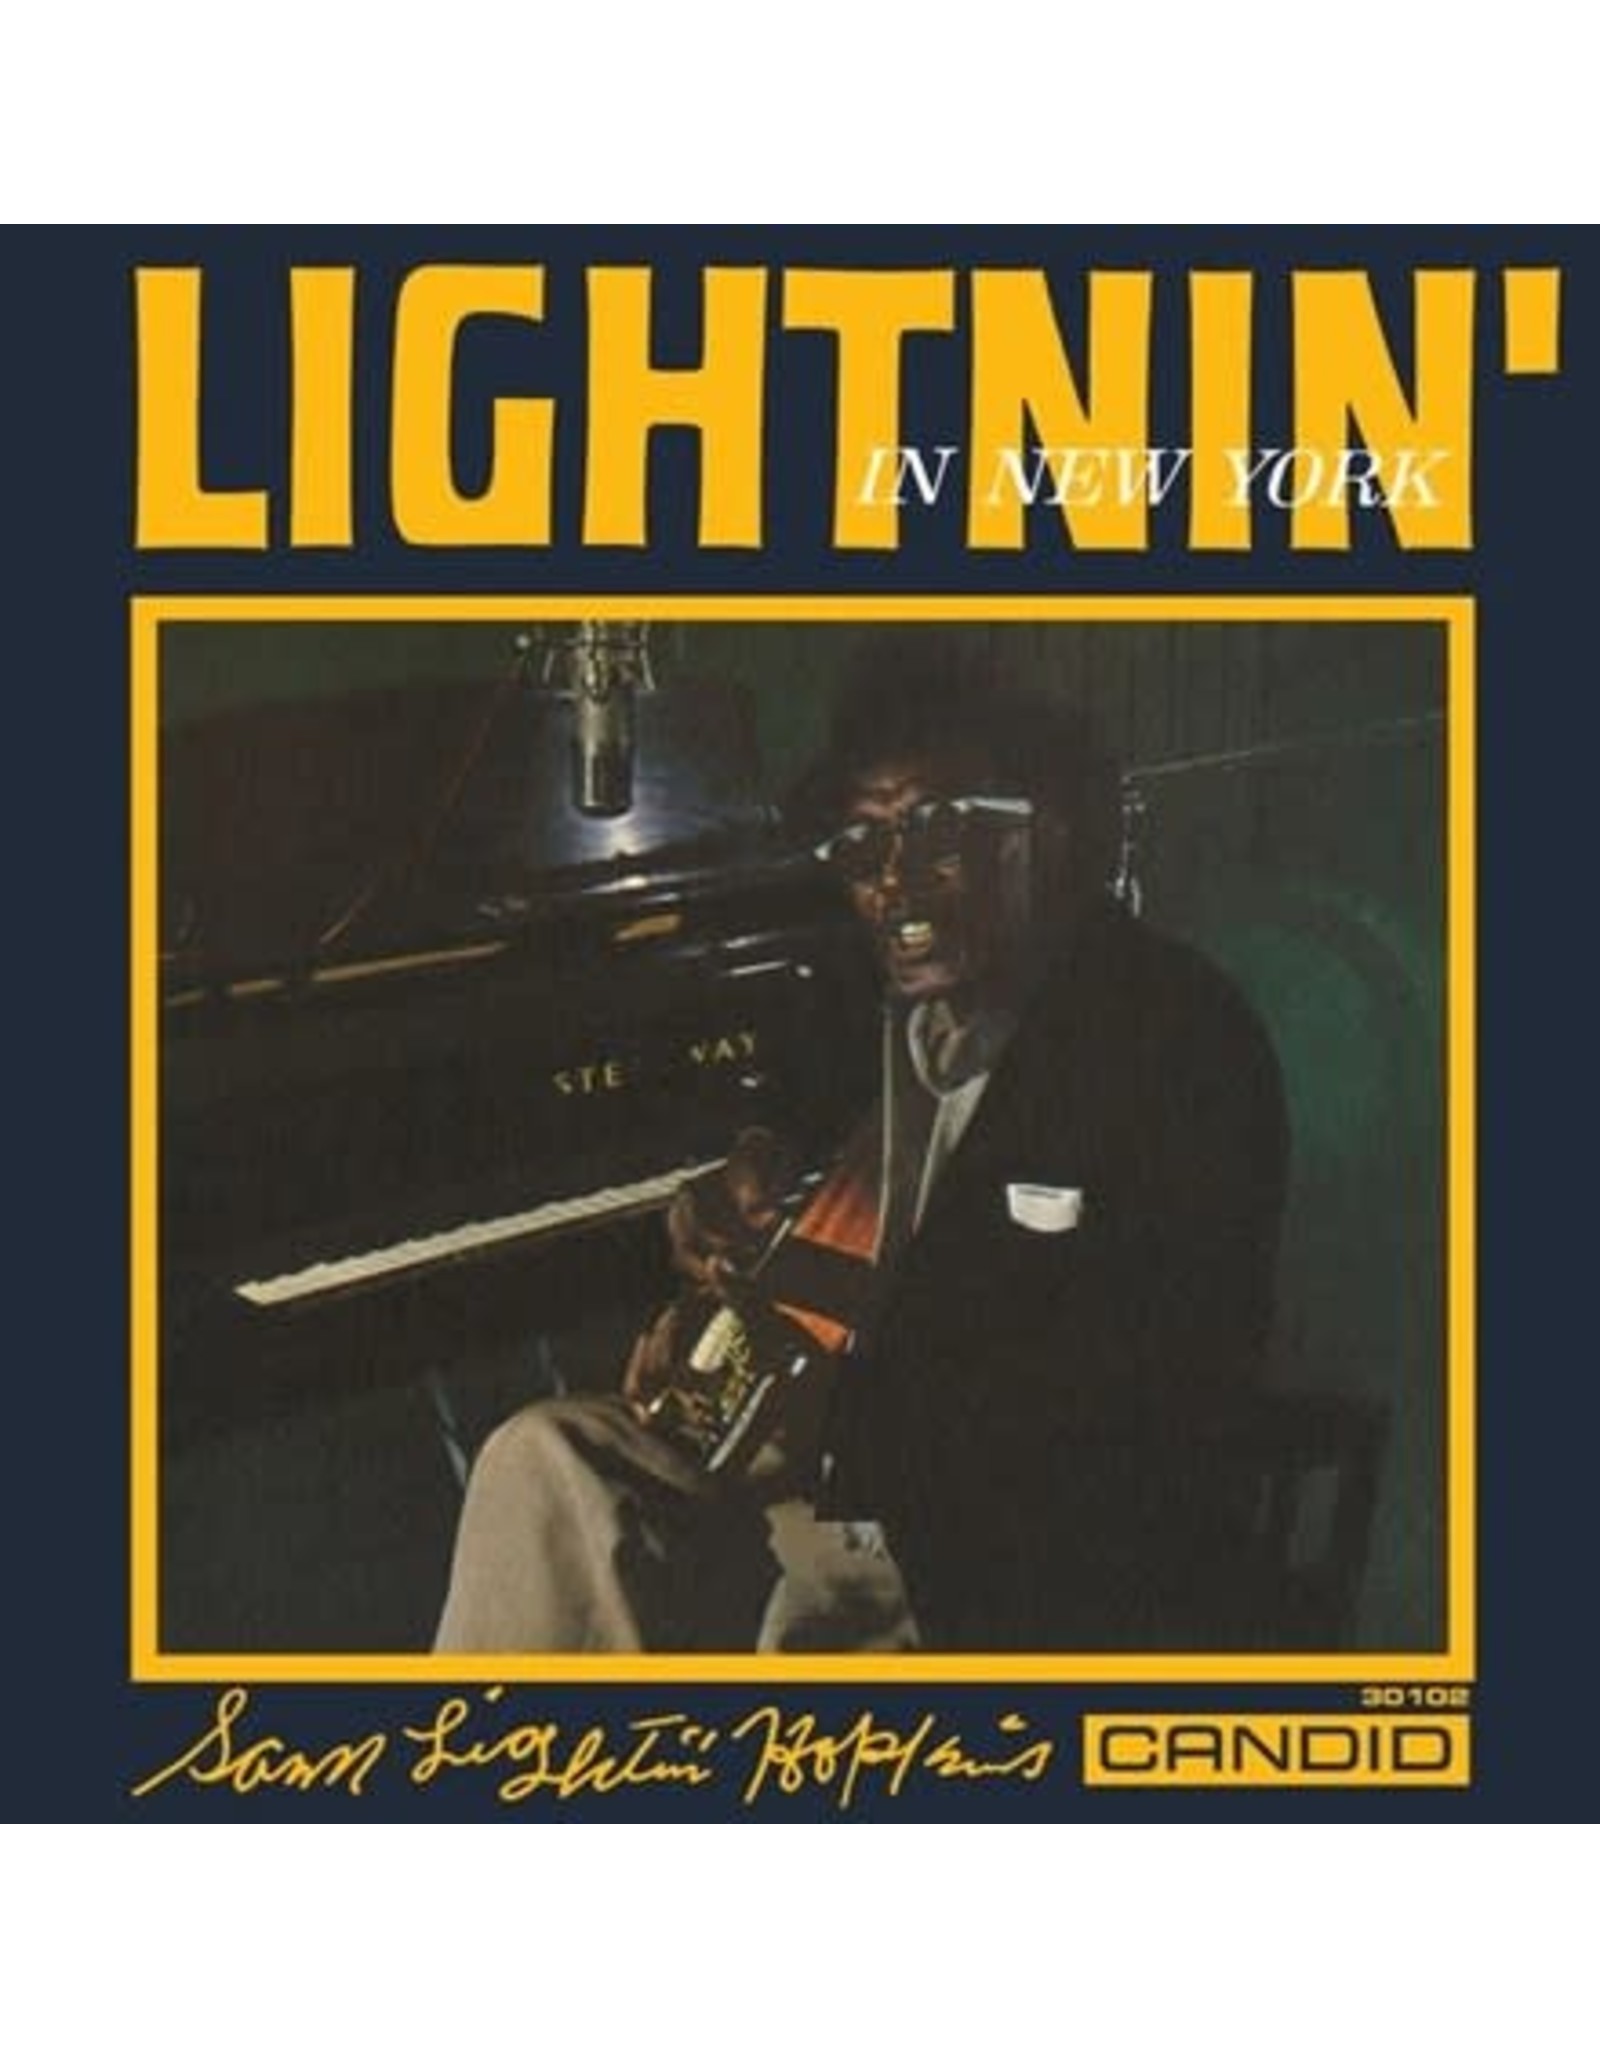 candid Hopkins, Lightnin': Lightnin' In New York LP